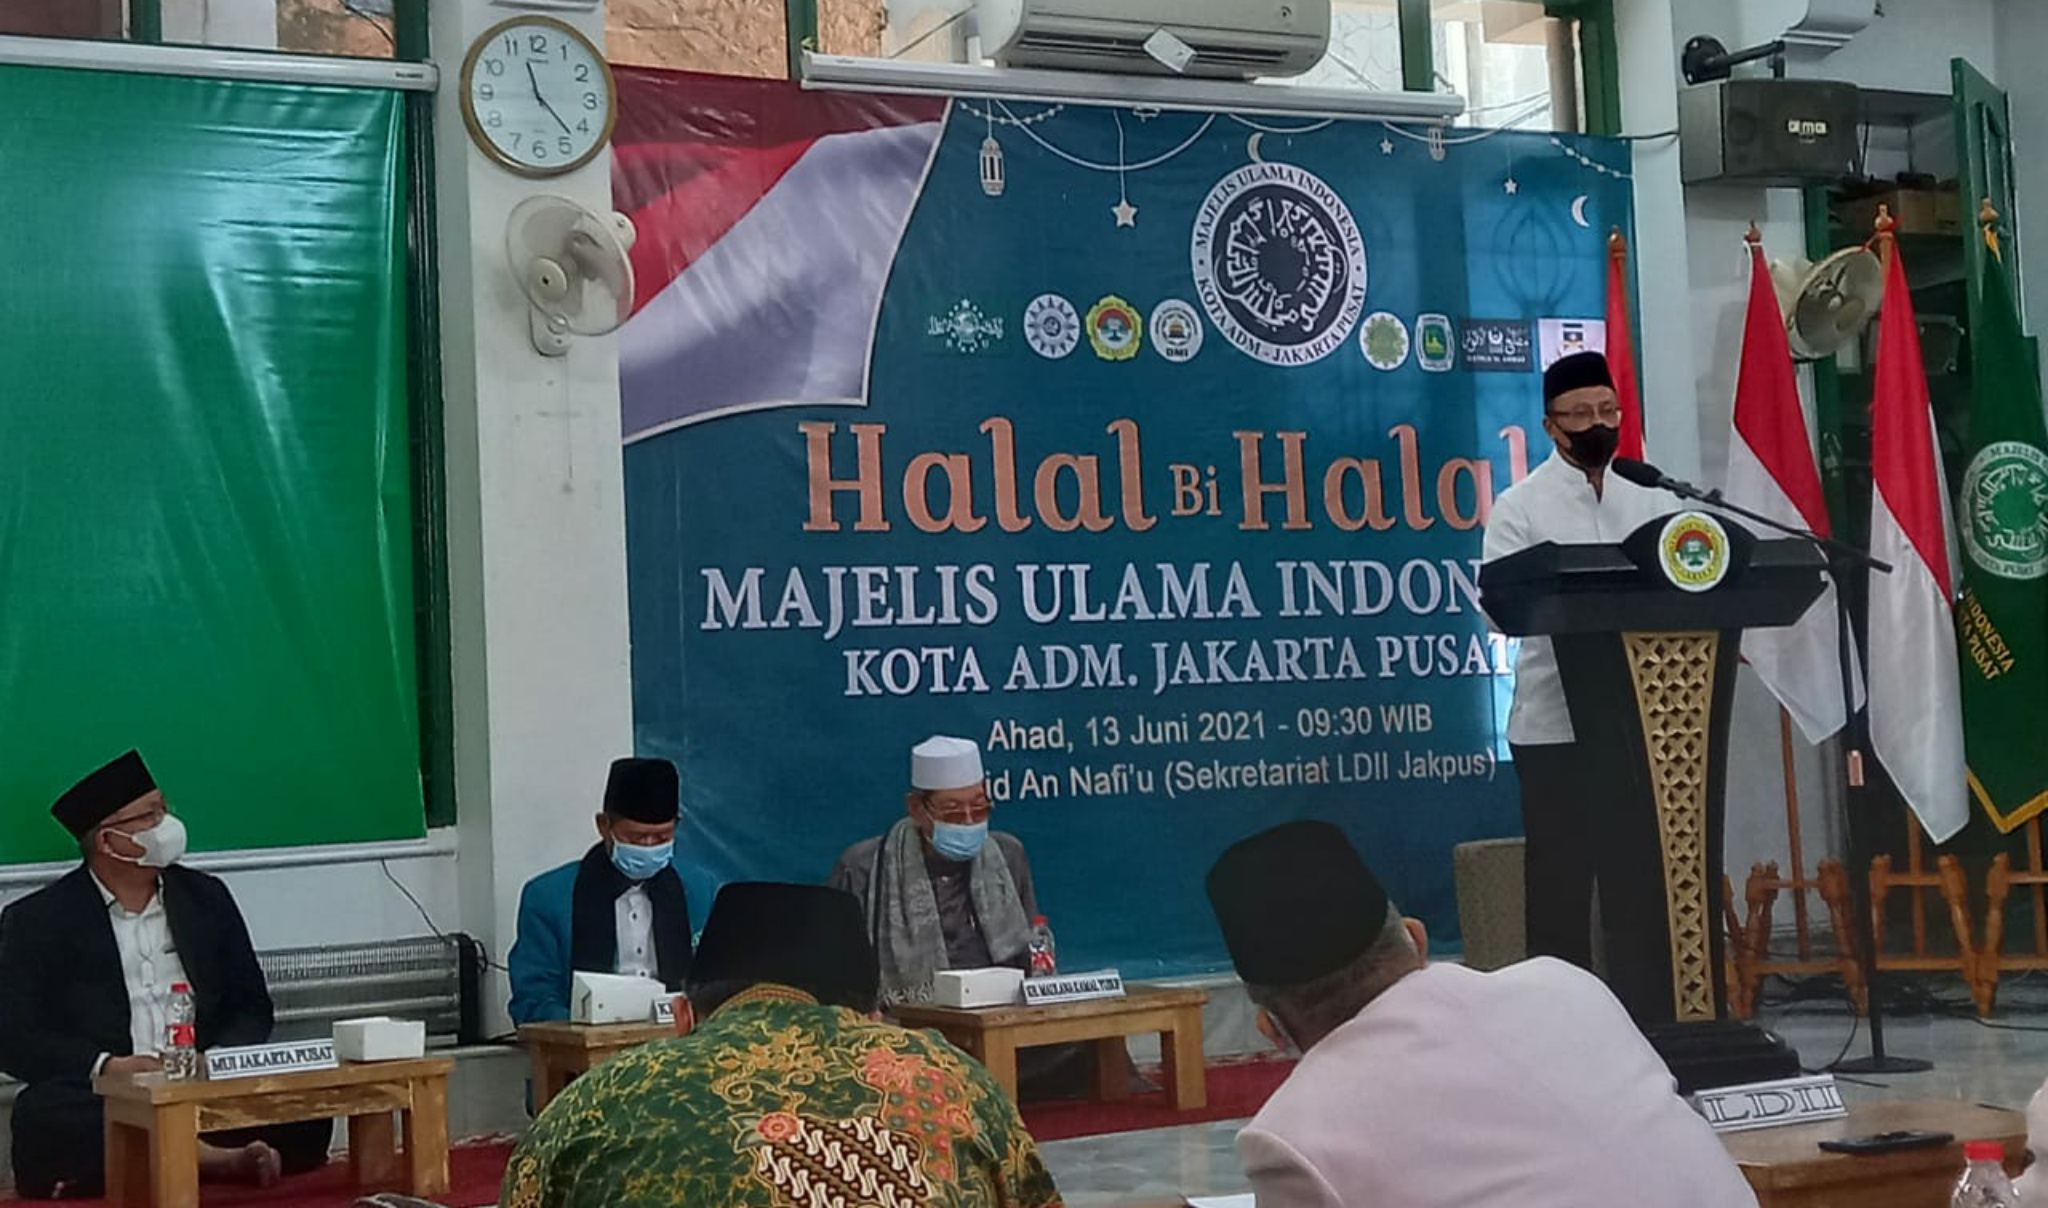 Gelar Halal Bi Halal, MUI Jakpus Ingatkan Peran Ulama di Tengah Umat